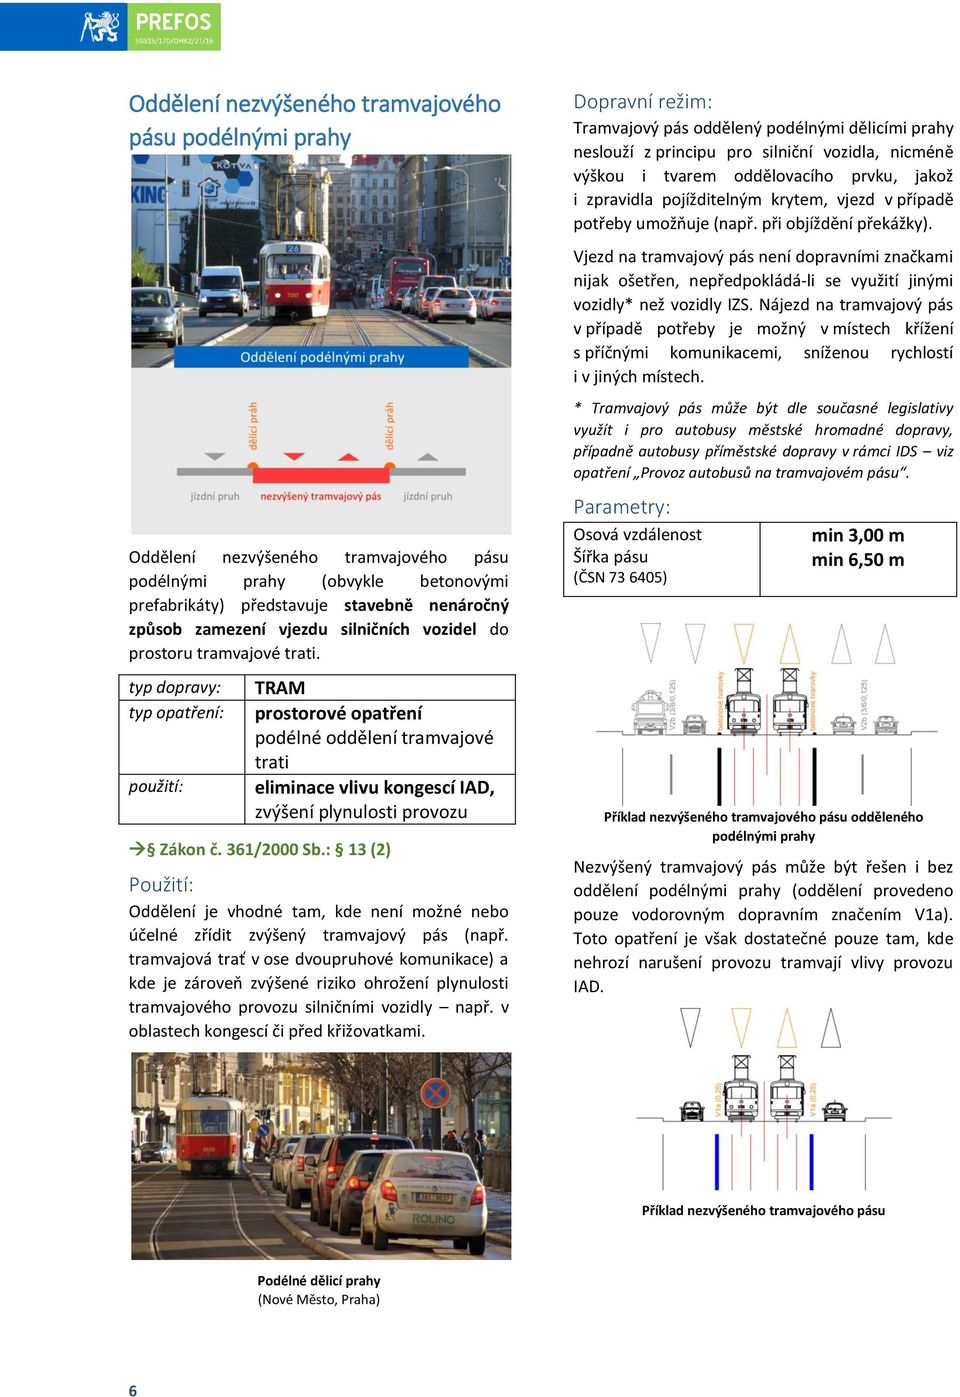 : 13 (2) Oddělení je vhodné tam, kde není možné nebo účelné zřídit zvýšený tramvajový pás (např.